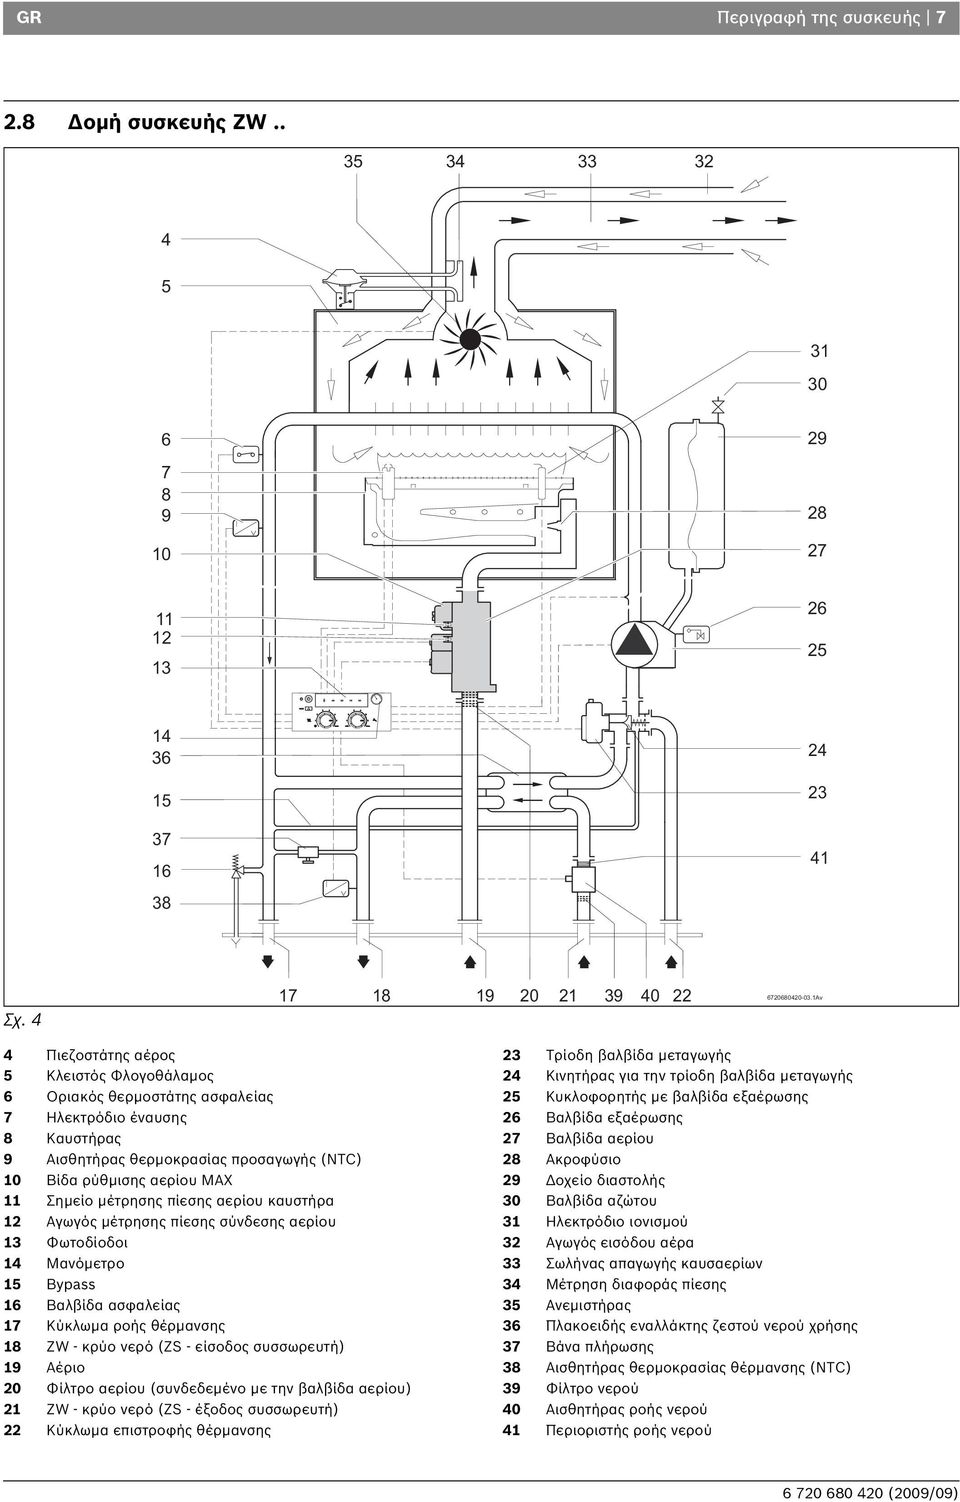 μέτρησης πίεσης αερίου καυστήρα 12 Αγωγός μέτρησης πίεσης σύνδεσης αερίου 13 Φωτοδίοδοι 14 Μανόμετρο 15 Bypass 16 Βαλβίδα ασφαλείας 17 Κύκλωμα ροής θέρμανσης 18 ZW - κρύο νερό (ZS - είσοδος